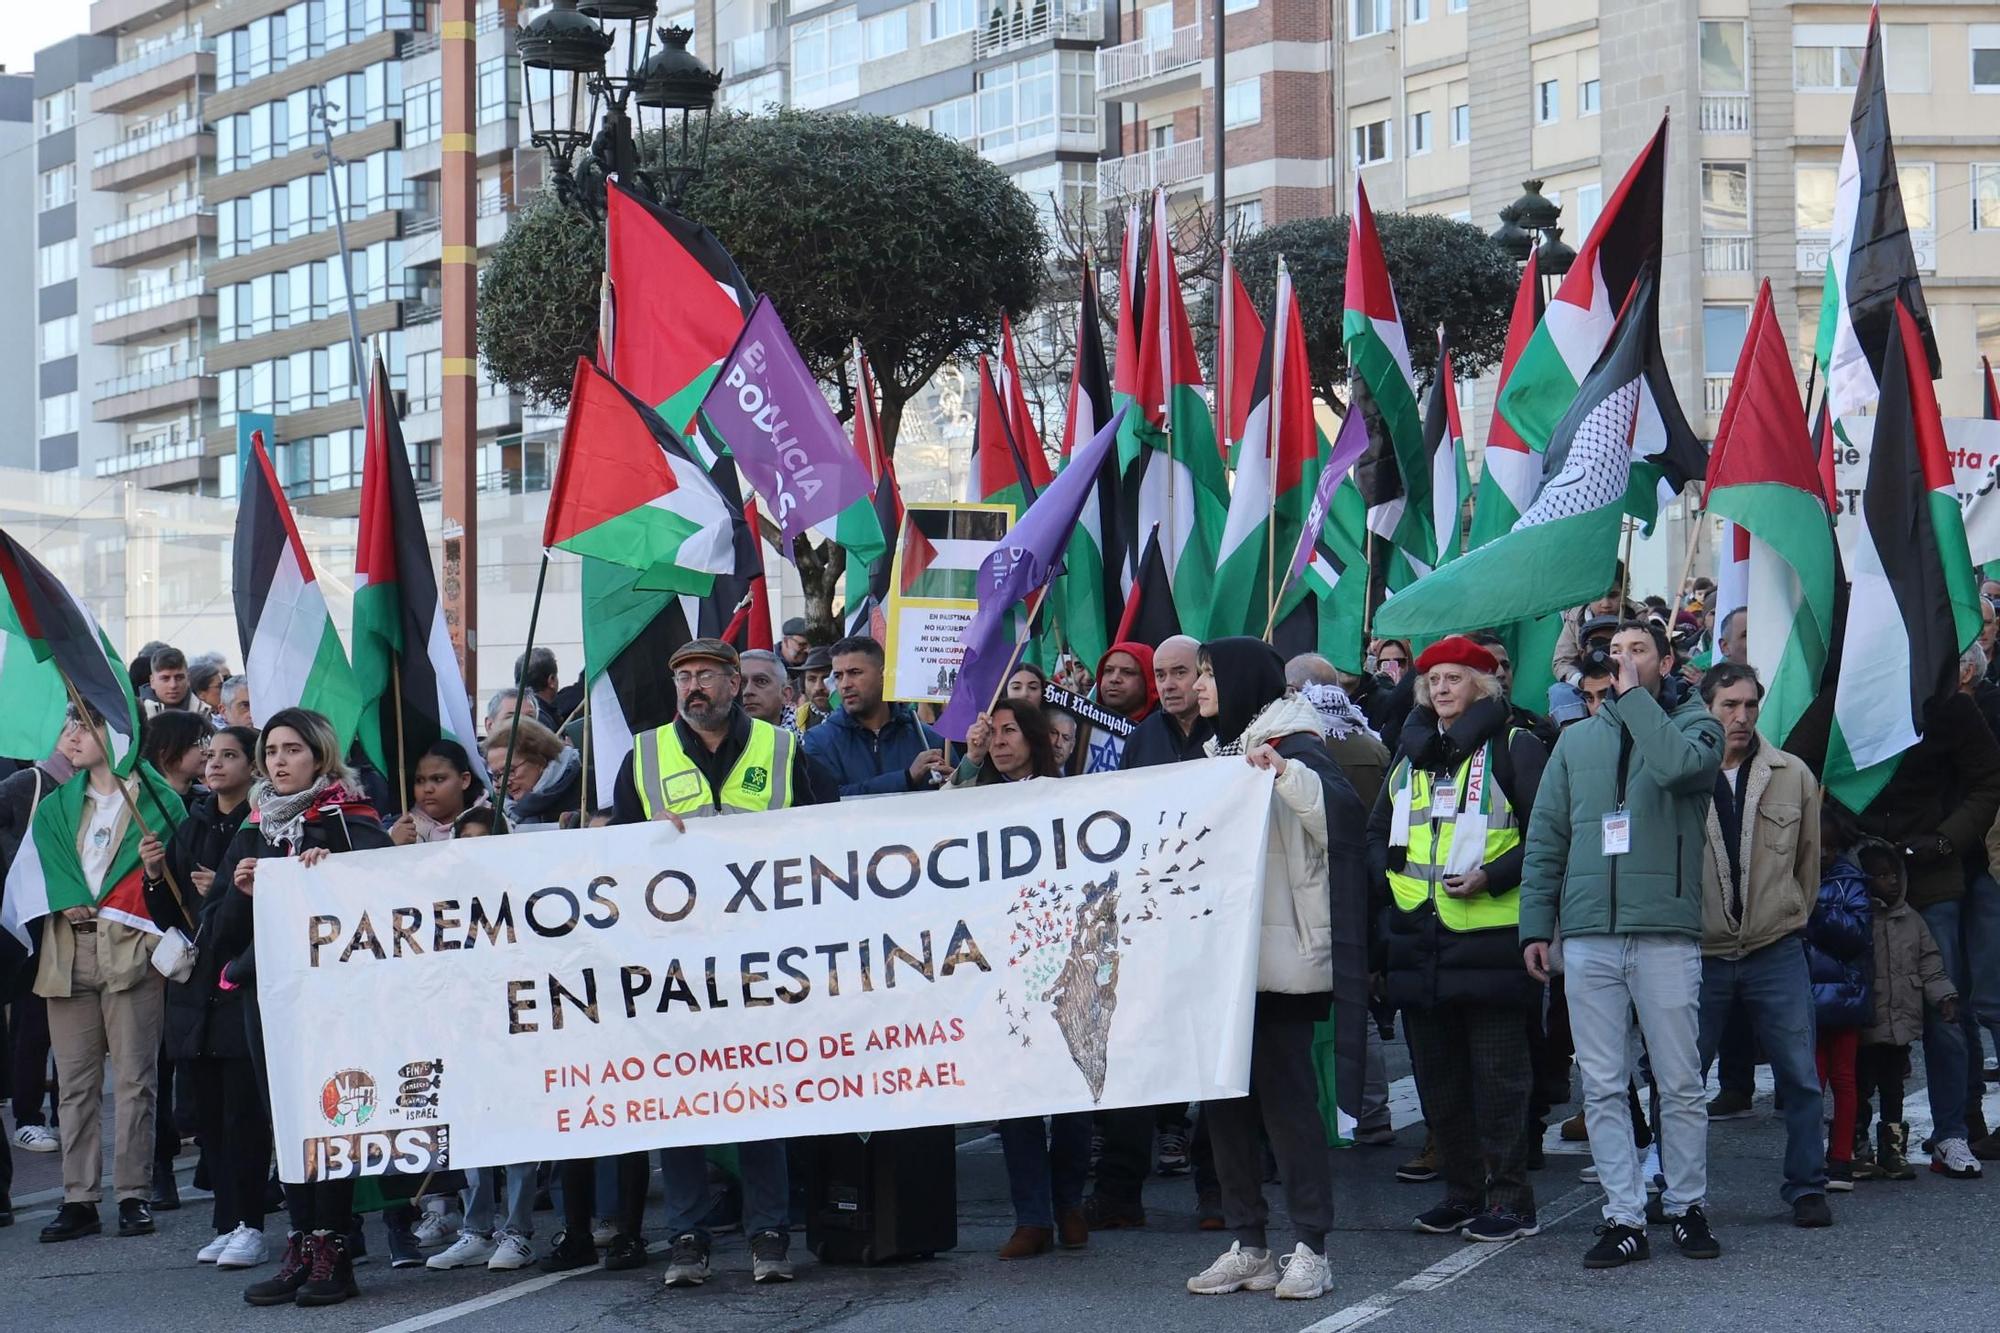 Vigo sale a la calle: "Paremos el genocidio en Palestina"